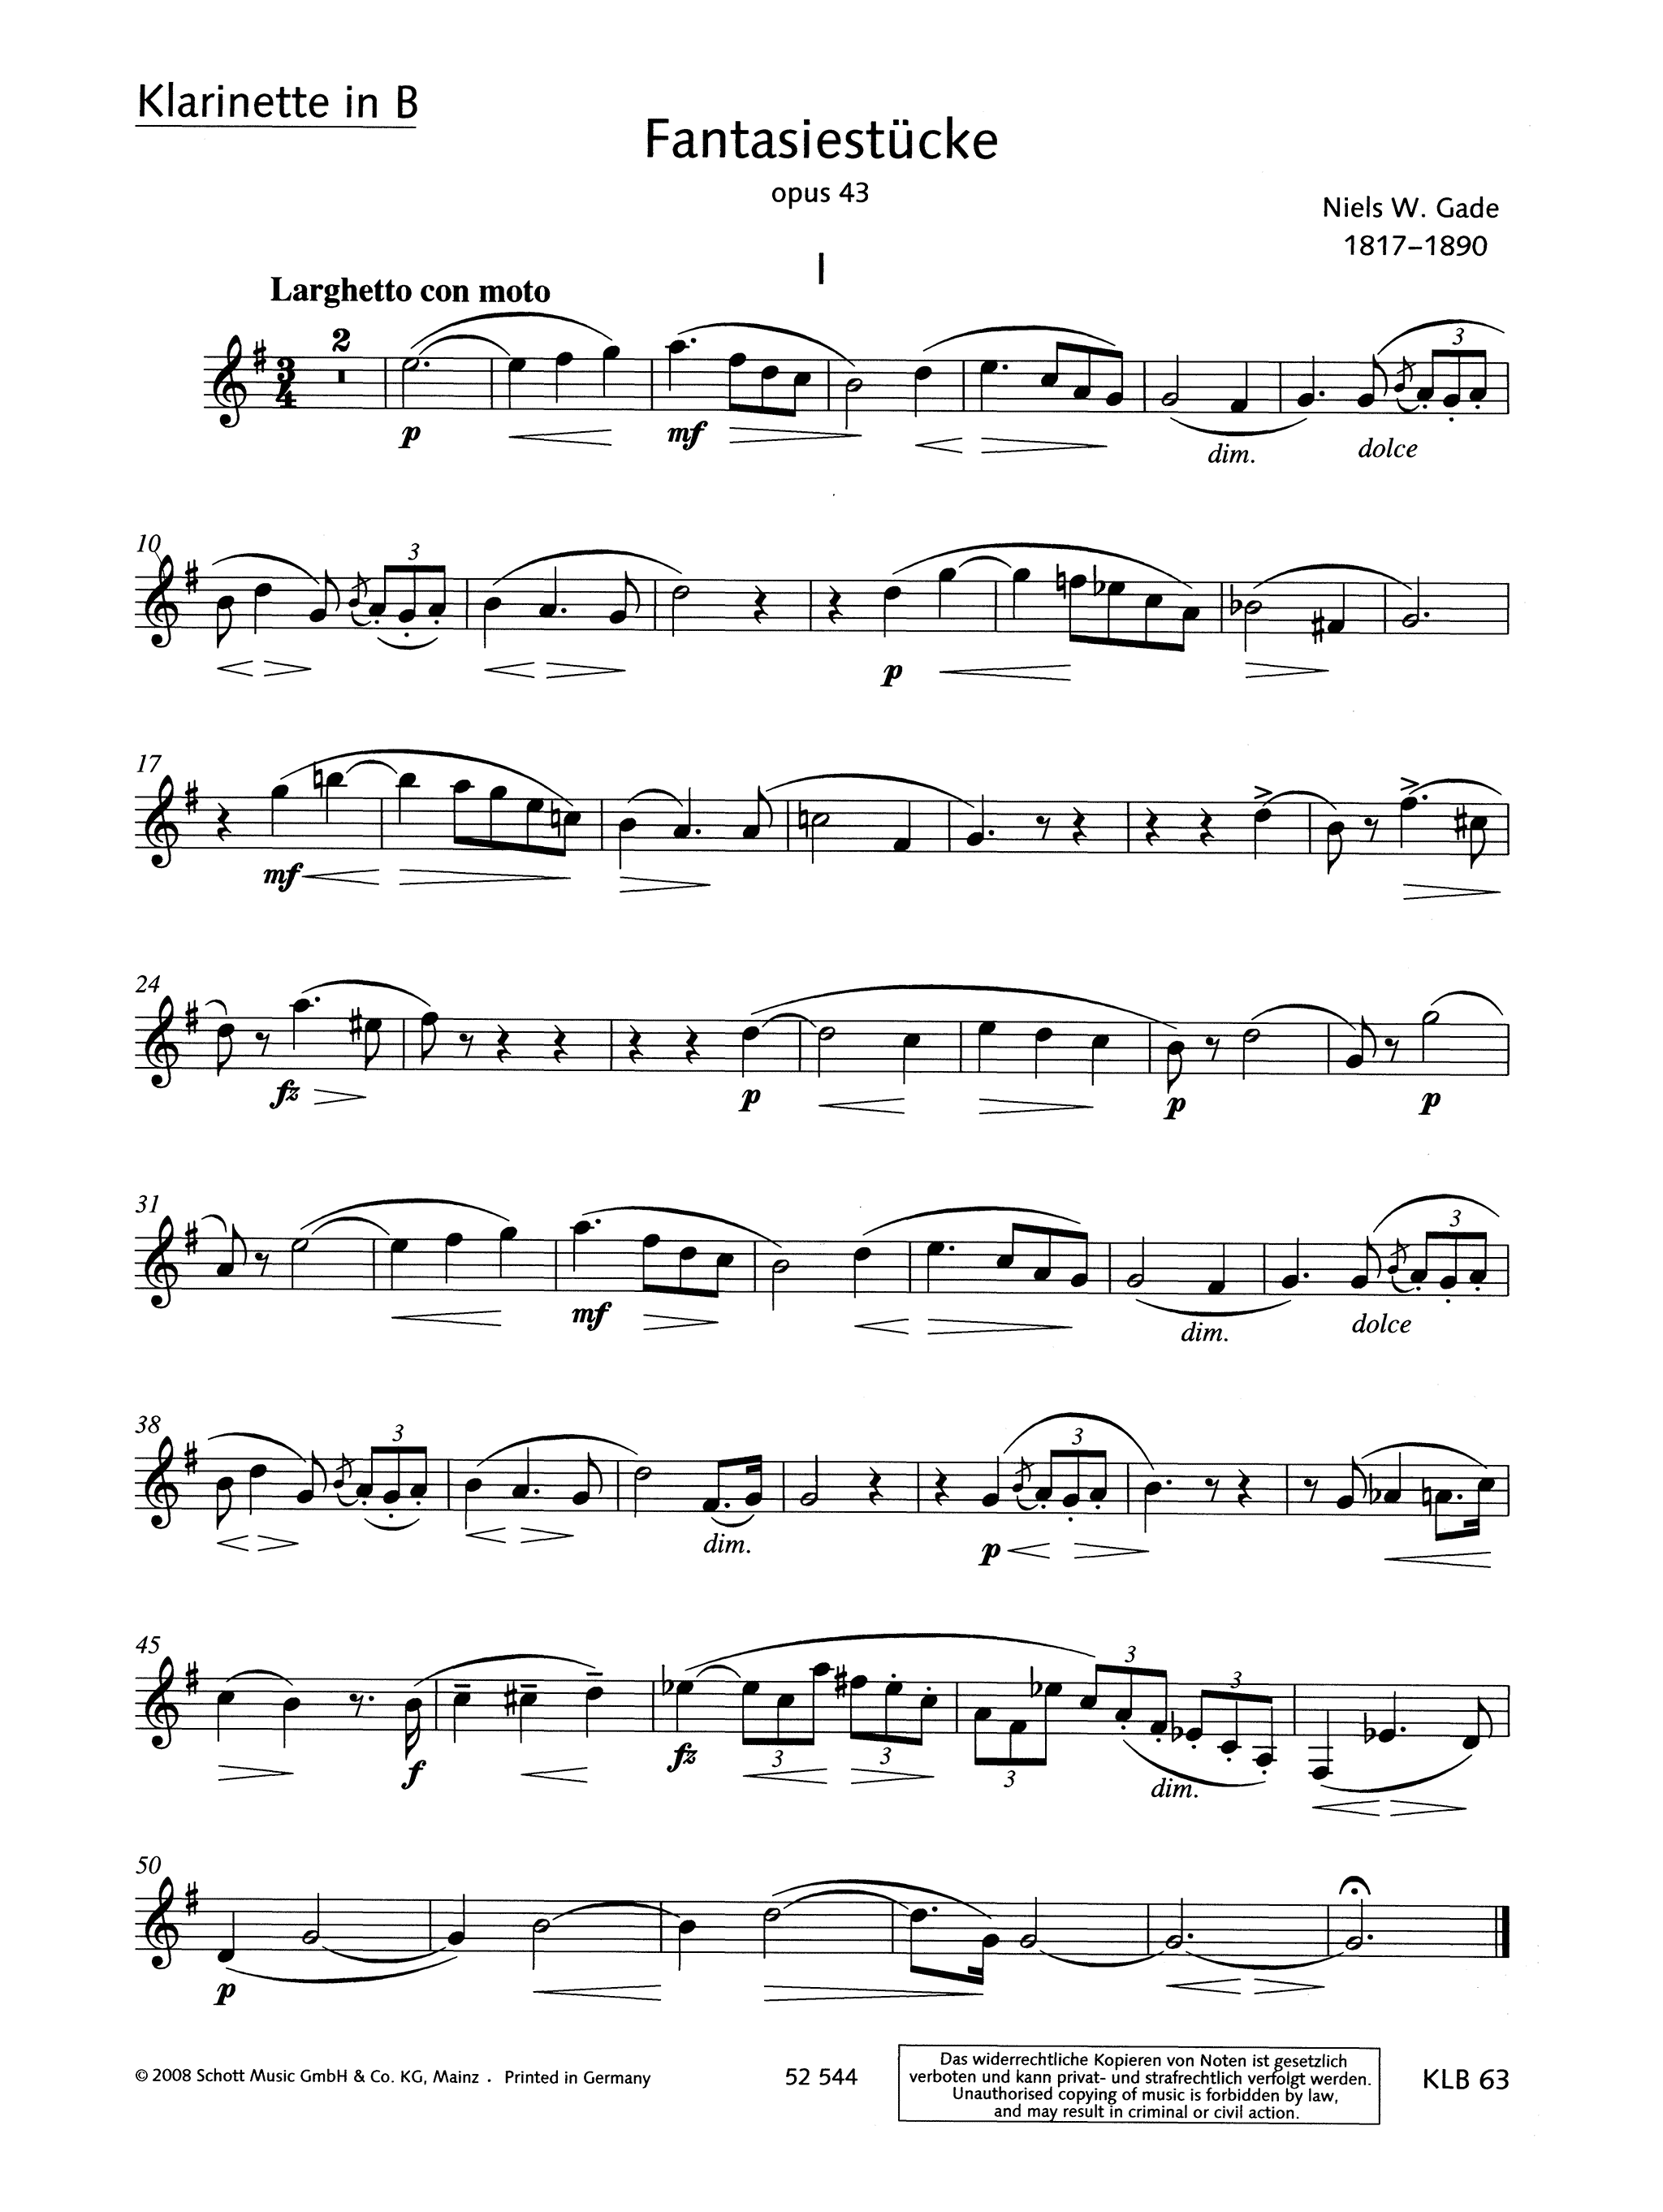 Fantasy Pieces Op. 43 Clarinet part